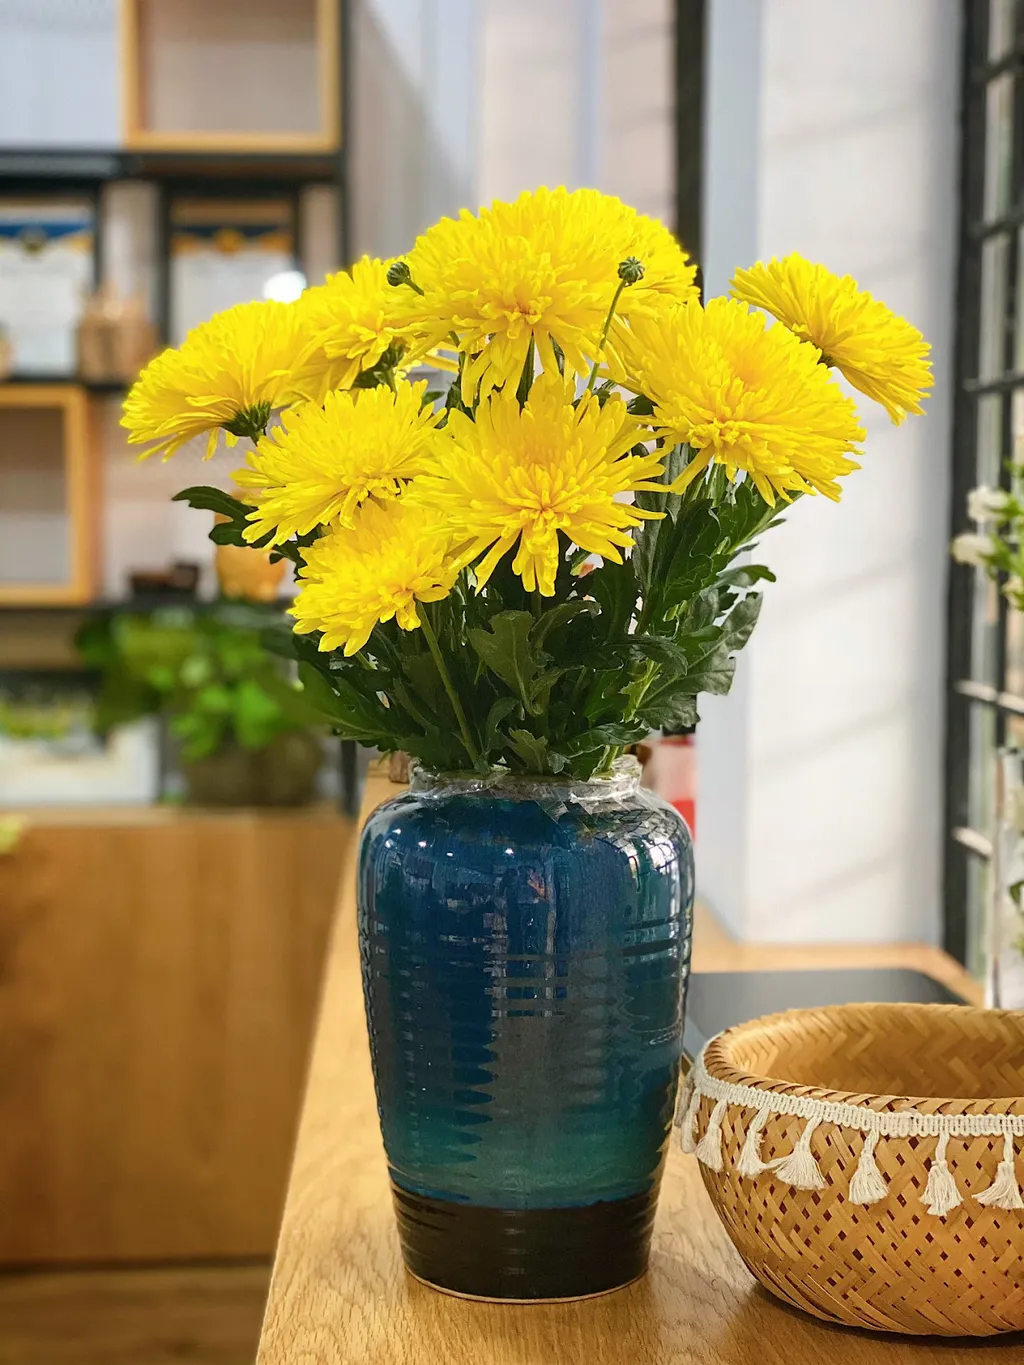 Đặt hoa cúc vàng trong các chậu hoa và đặt trên cửa ra vào hoặc các góc phòng để tạo ra một không gian sống sinh động và ấm áp.